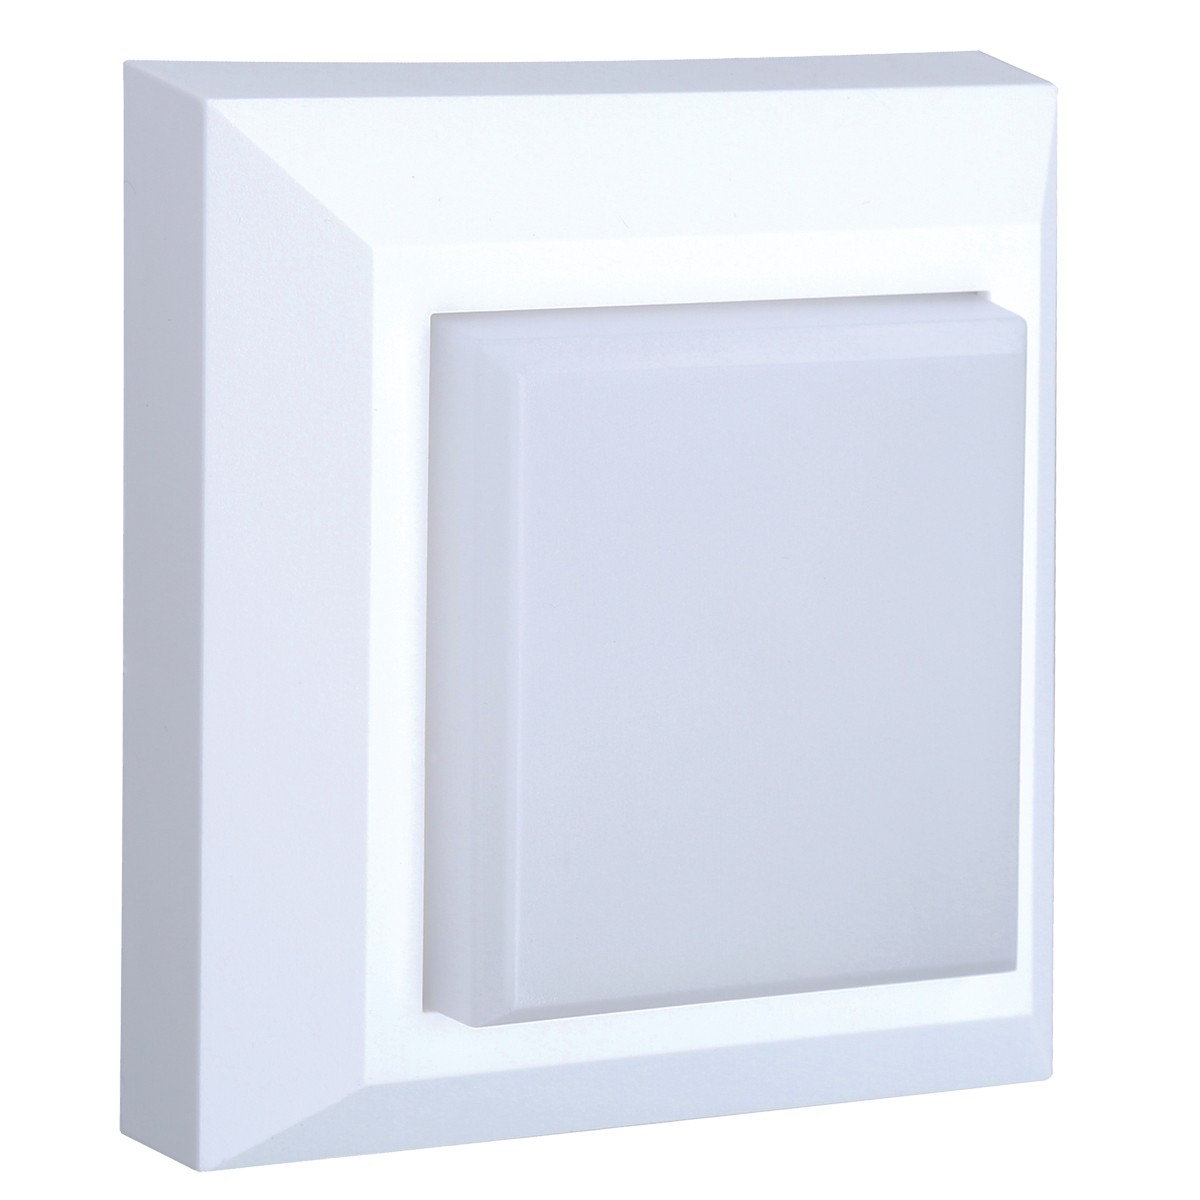 Φωτιστικό led τοίχου εξωτερικού χώρου τετράγωνο, 3W, 3000K, 180lm, 120o, λευκό, 220-240V, 125x125x27mm, IP65 VK/02025/W/W